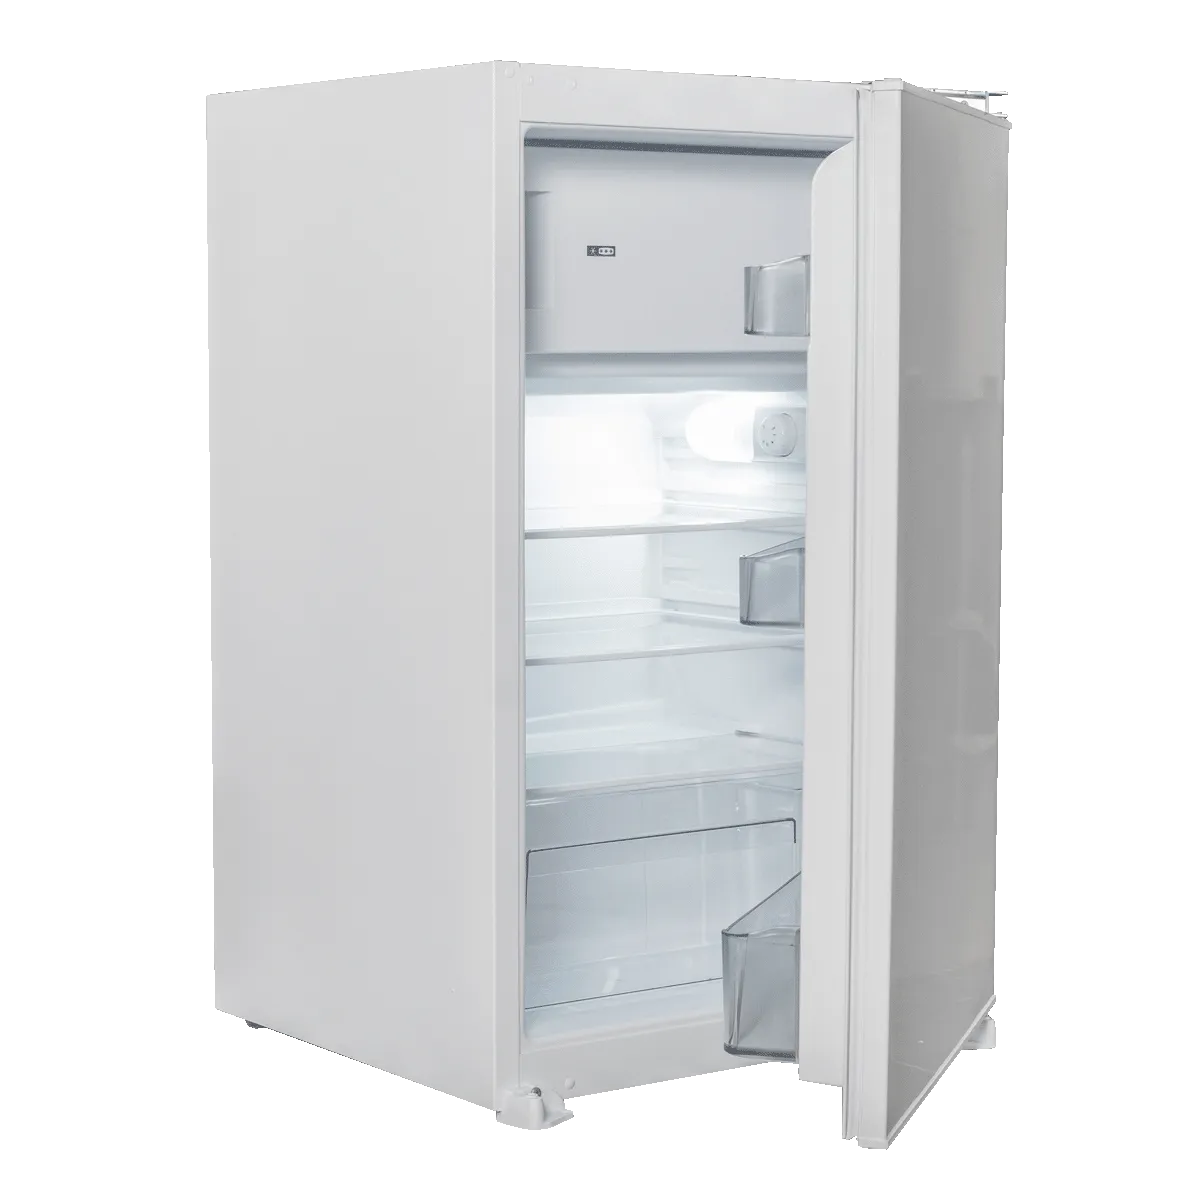 Built-in refrigerator IKS 1450F 